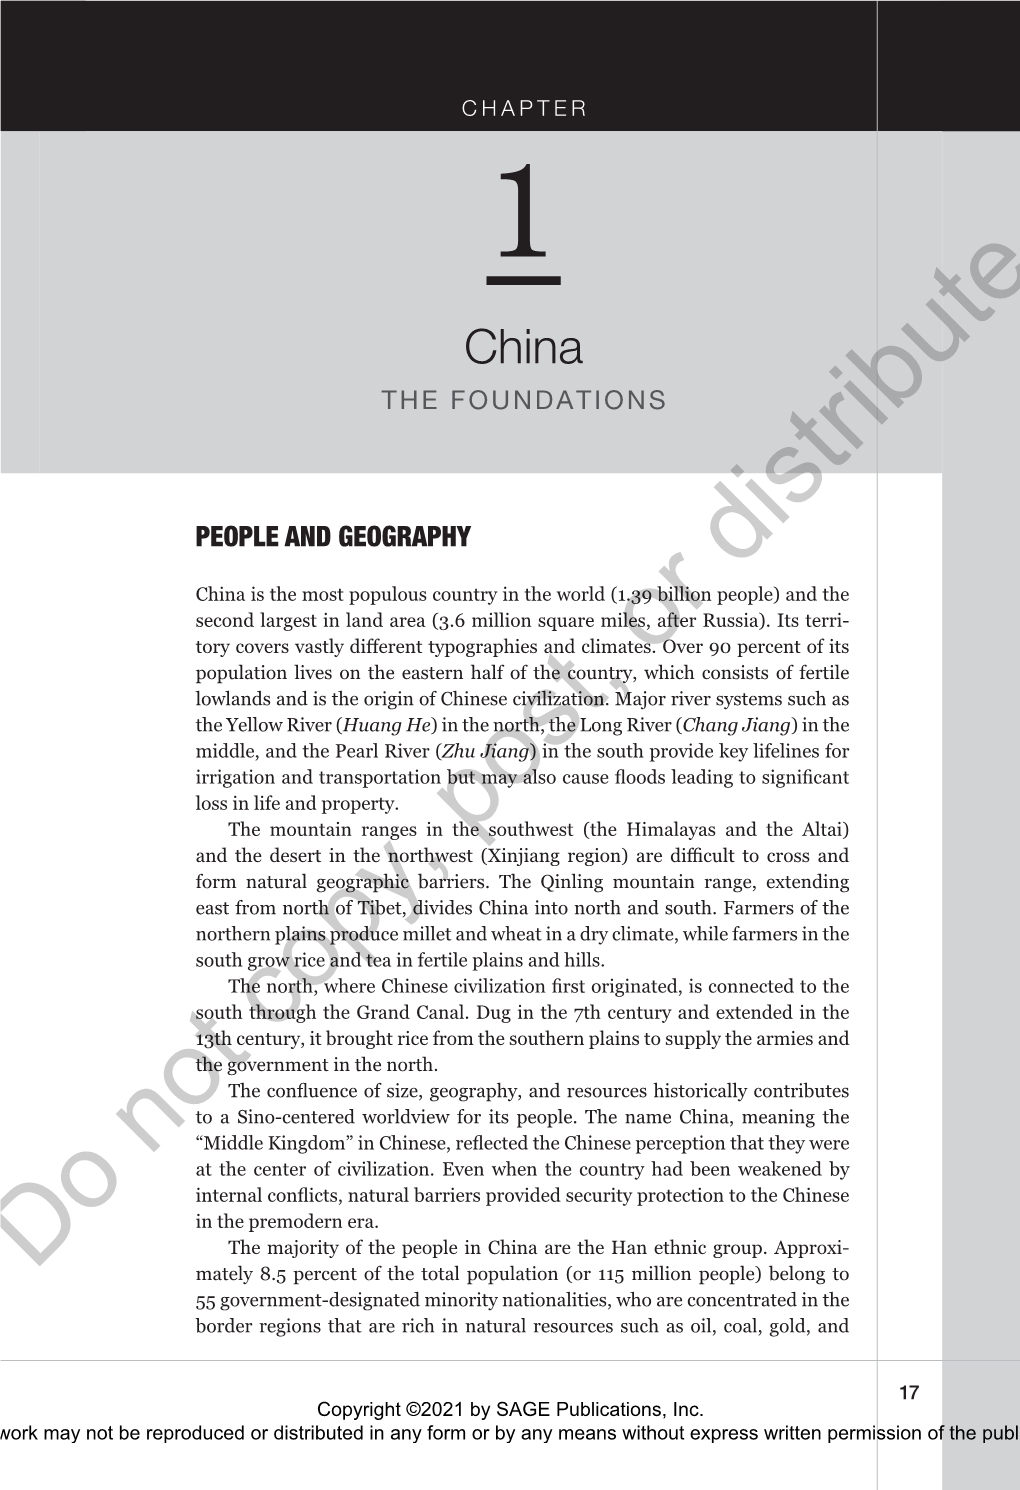 Chapter 1. China